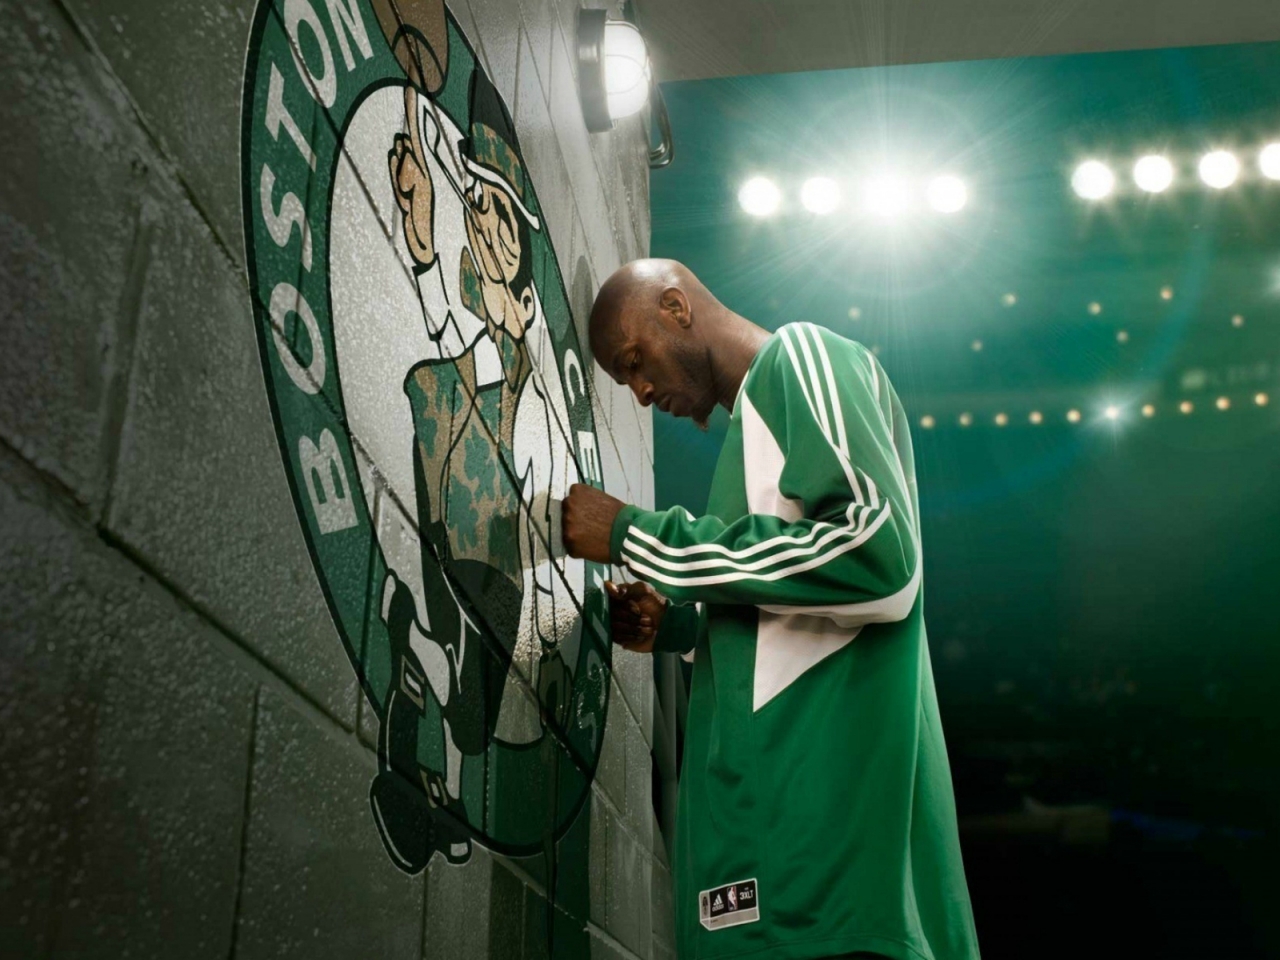 Kevin Garnett Boston Celtics for 1280 x 960 resolution